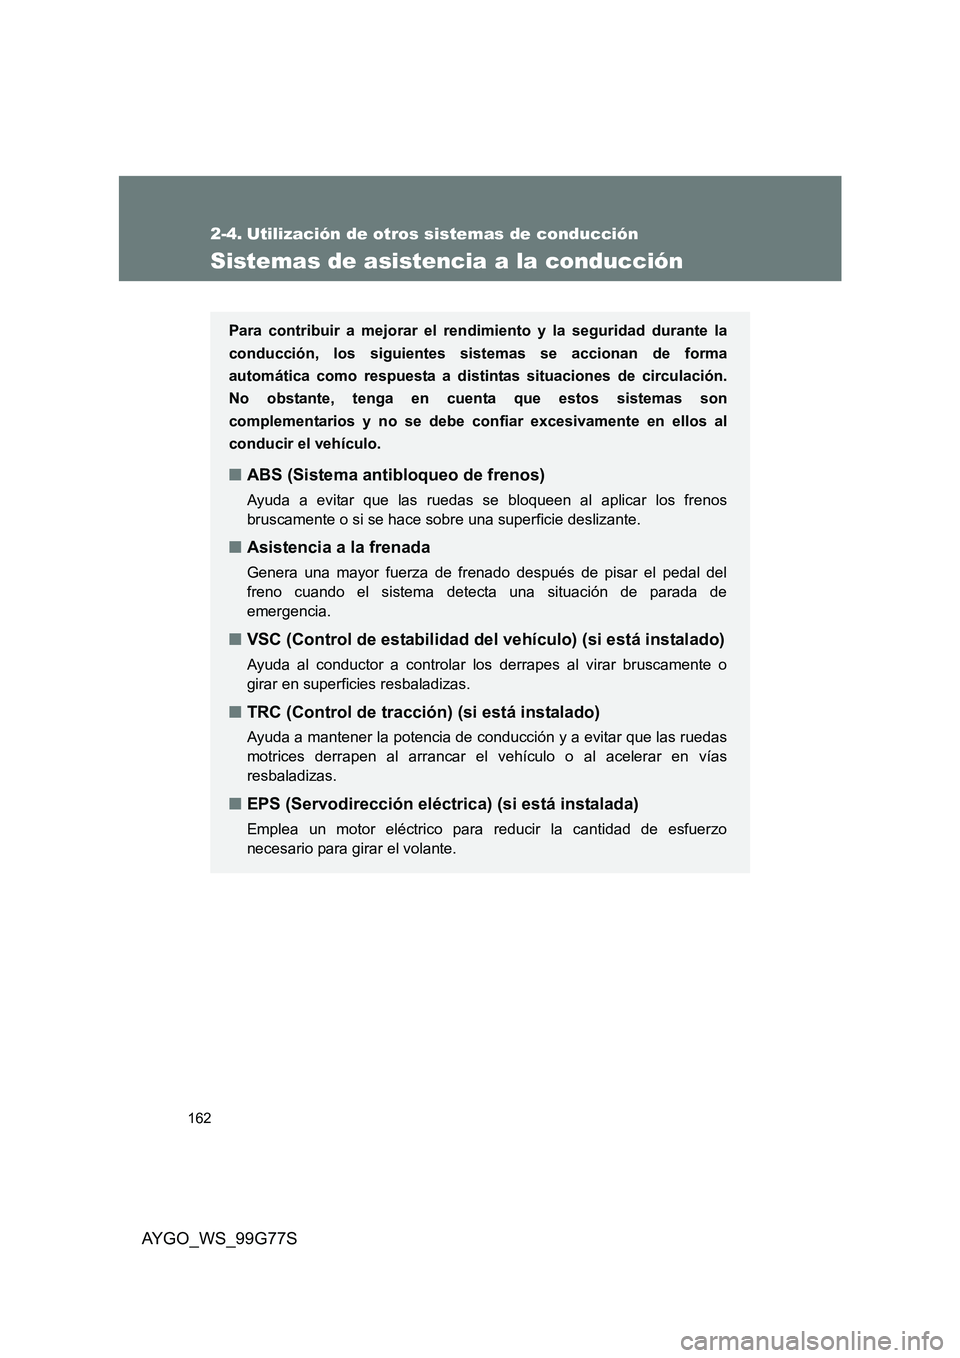 TOYOTA AYGO 2013  Manuale de Empleo (in Spanish) 162
AYGO_WS_99G77S
2-4. Utilización de otros sistemas de conducción
Sistemas de asistencia a la conducción
Para contribuir a mejorar el rendimiento y la seguridad durante la 
conducción, los sigui